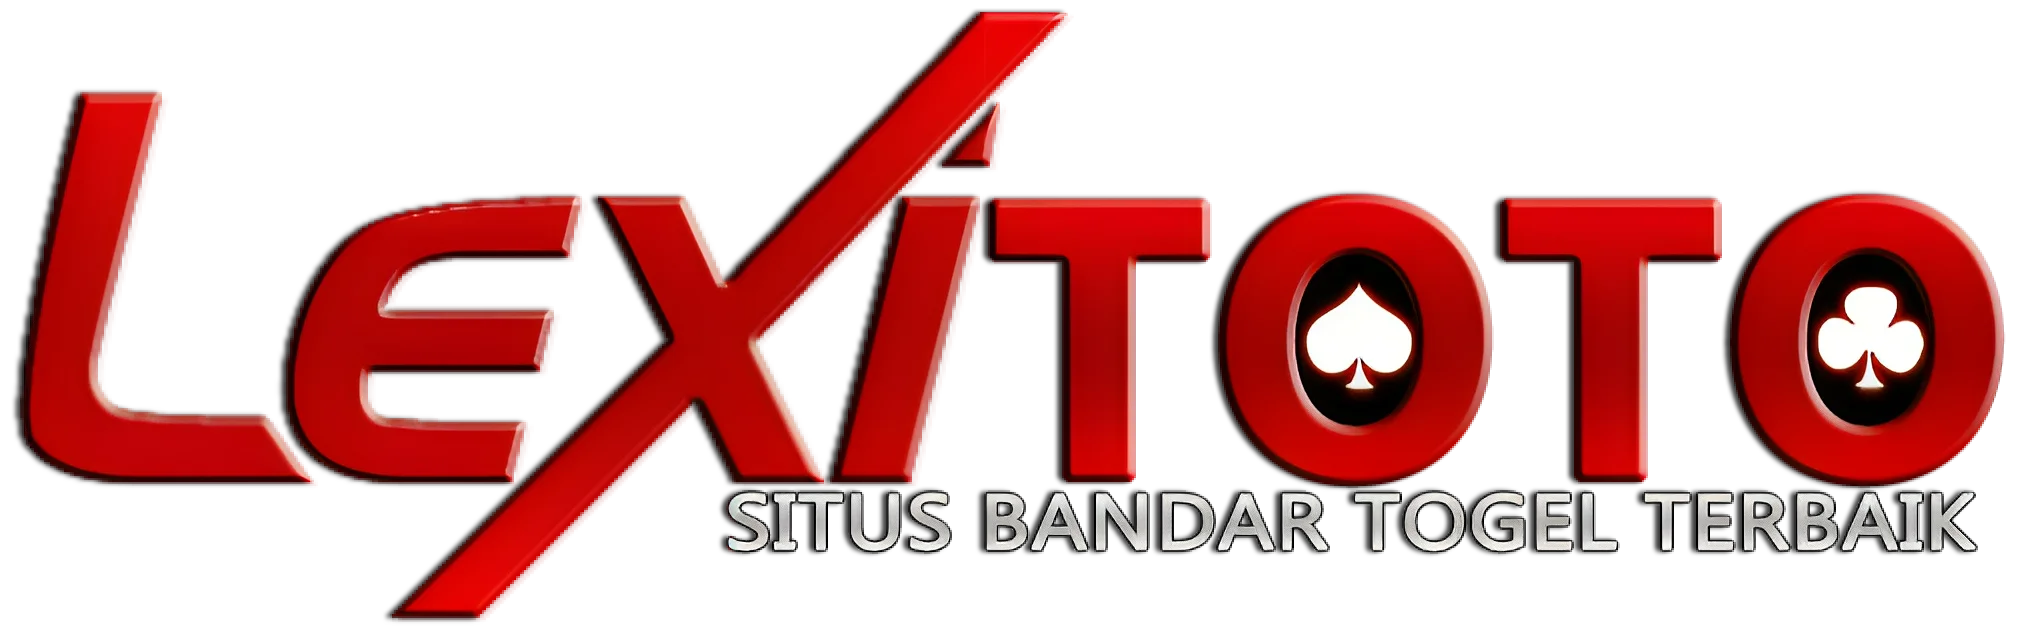 logo panduan lengkap LEXITOTO